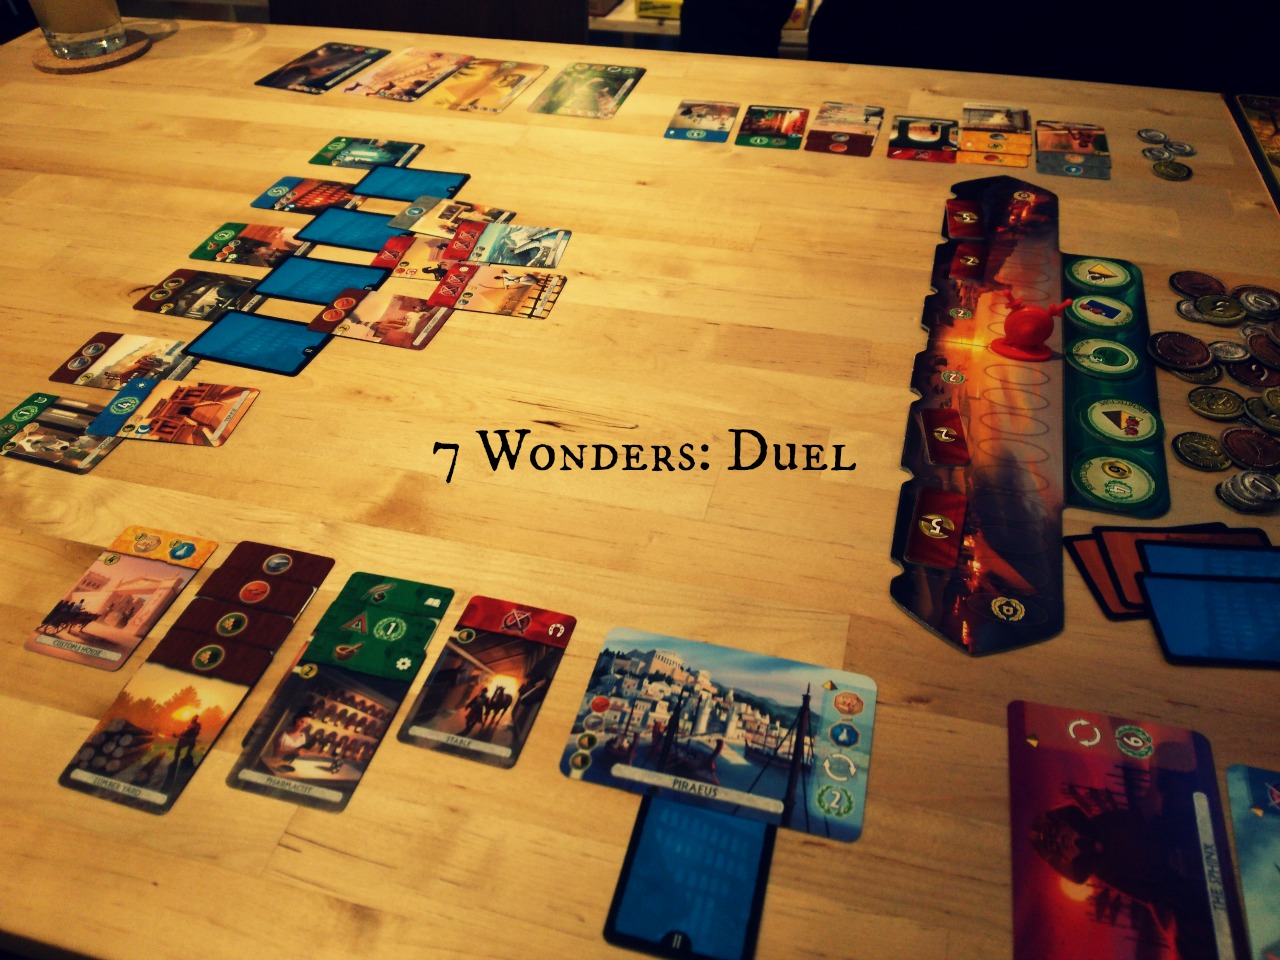 ボードゲームガーデン 7 Wonders Duel 世界の七不思議 デュエル 感想のみ